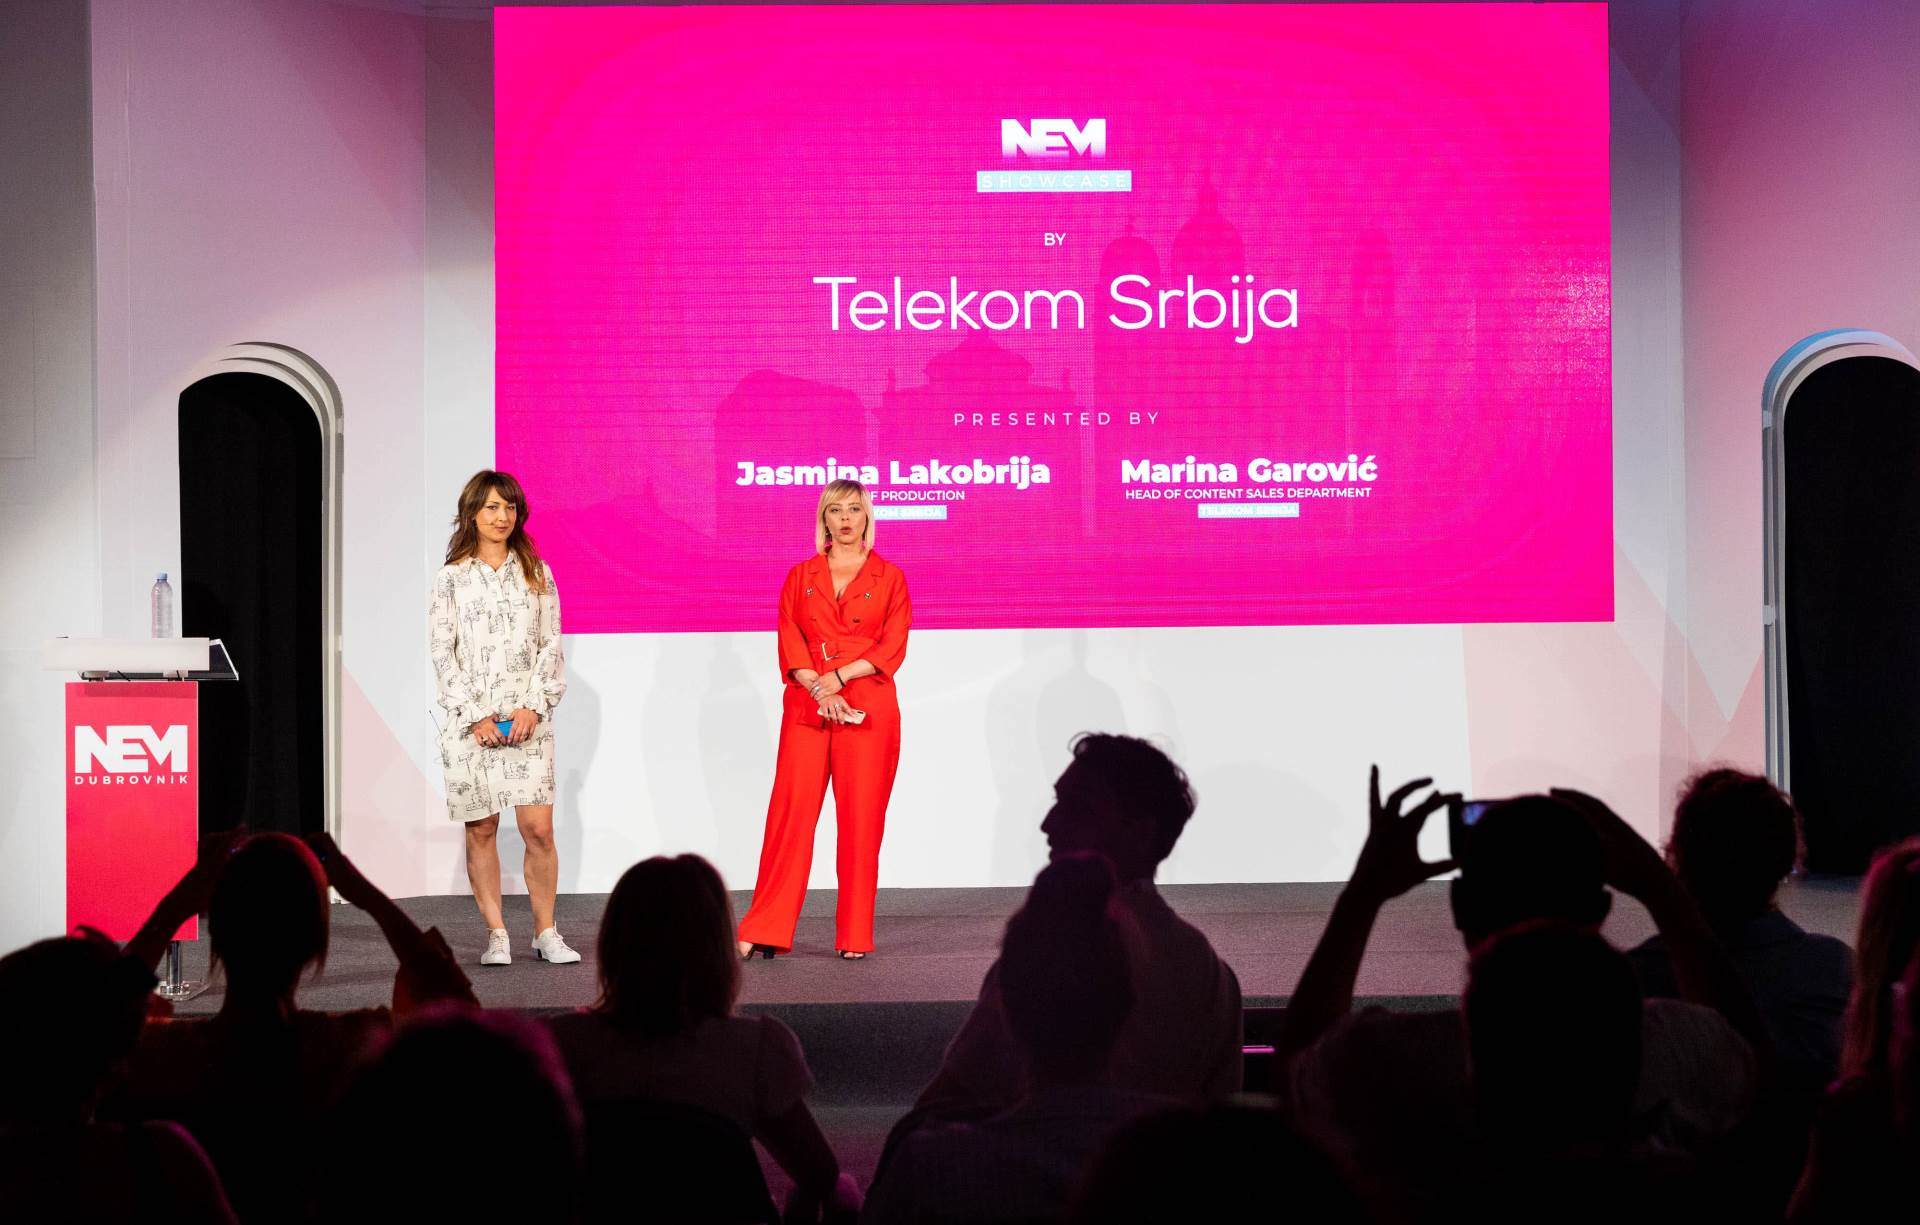  Telekom Srbija na festivalu NEM oduševila je sve. 